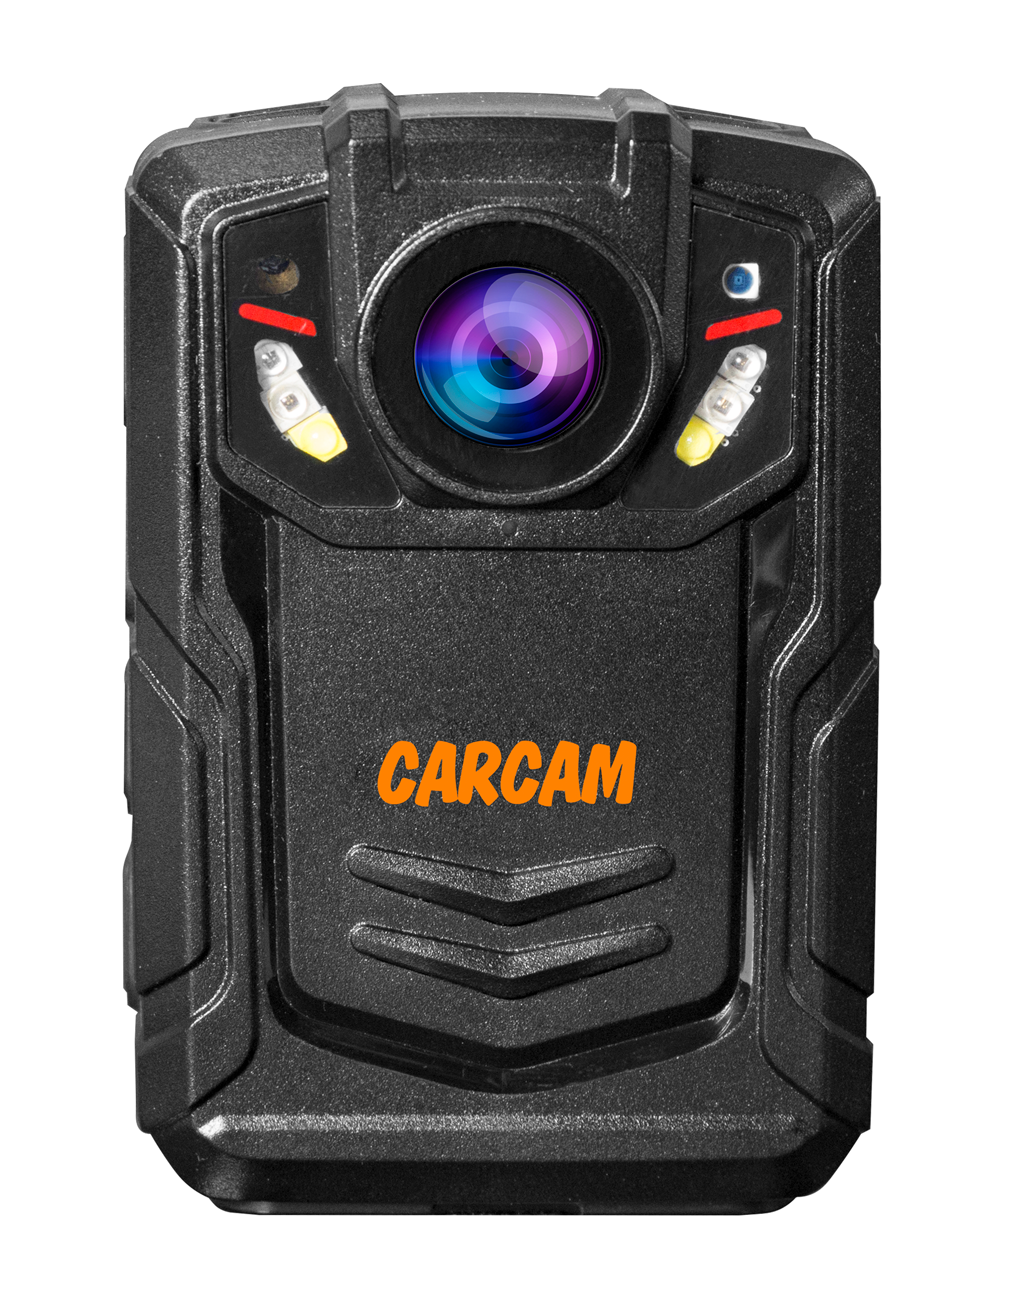 Персональный Quad HD видеорегистратор  CARCAM COMBAT 2S/4G 64GB персональный quad hd видеорегистратор для работников технических объектов carcam combat 2s prof 256gb